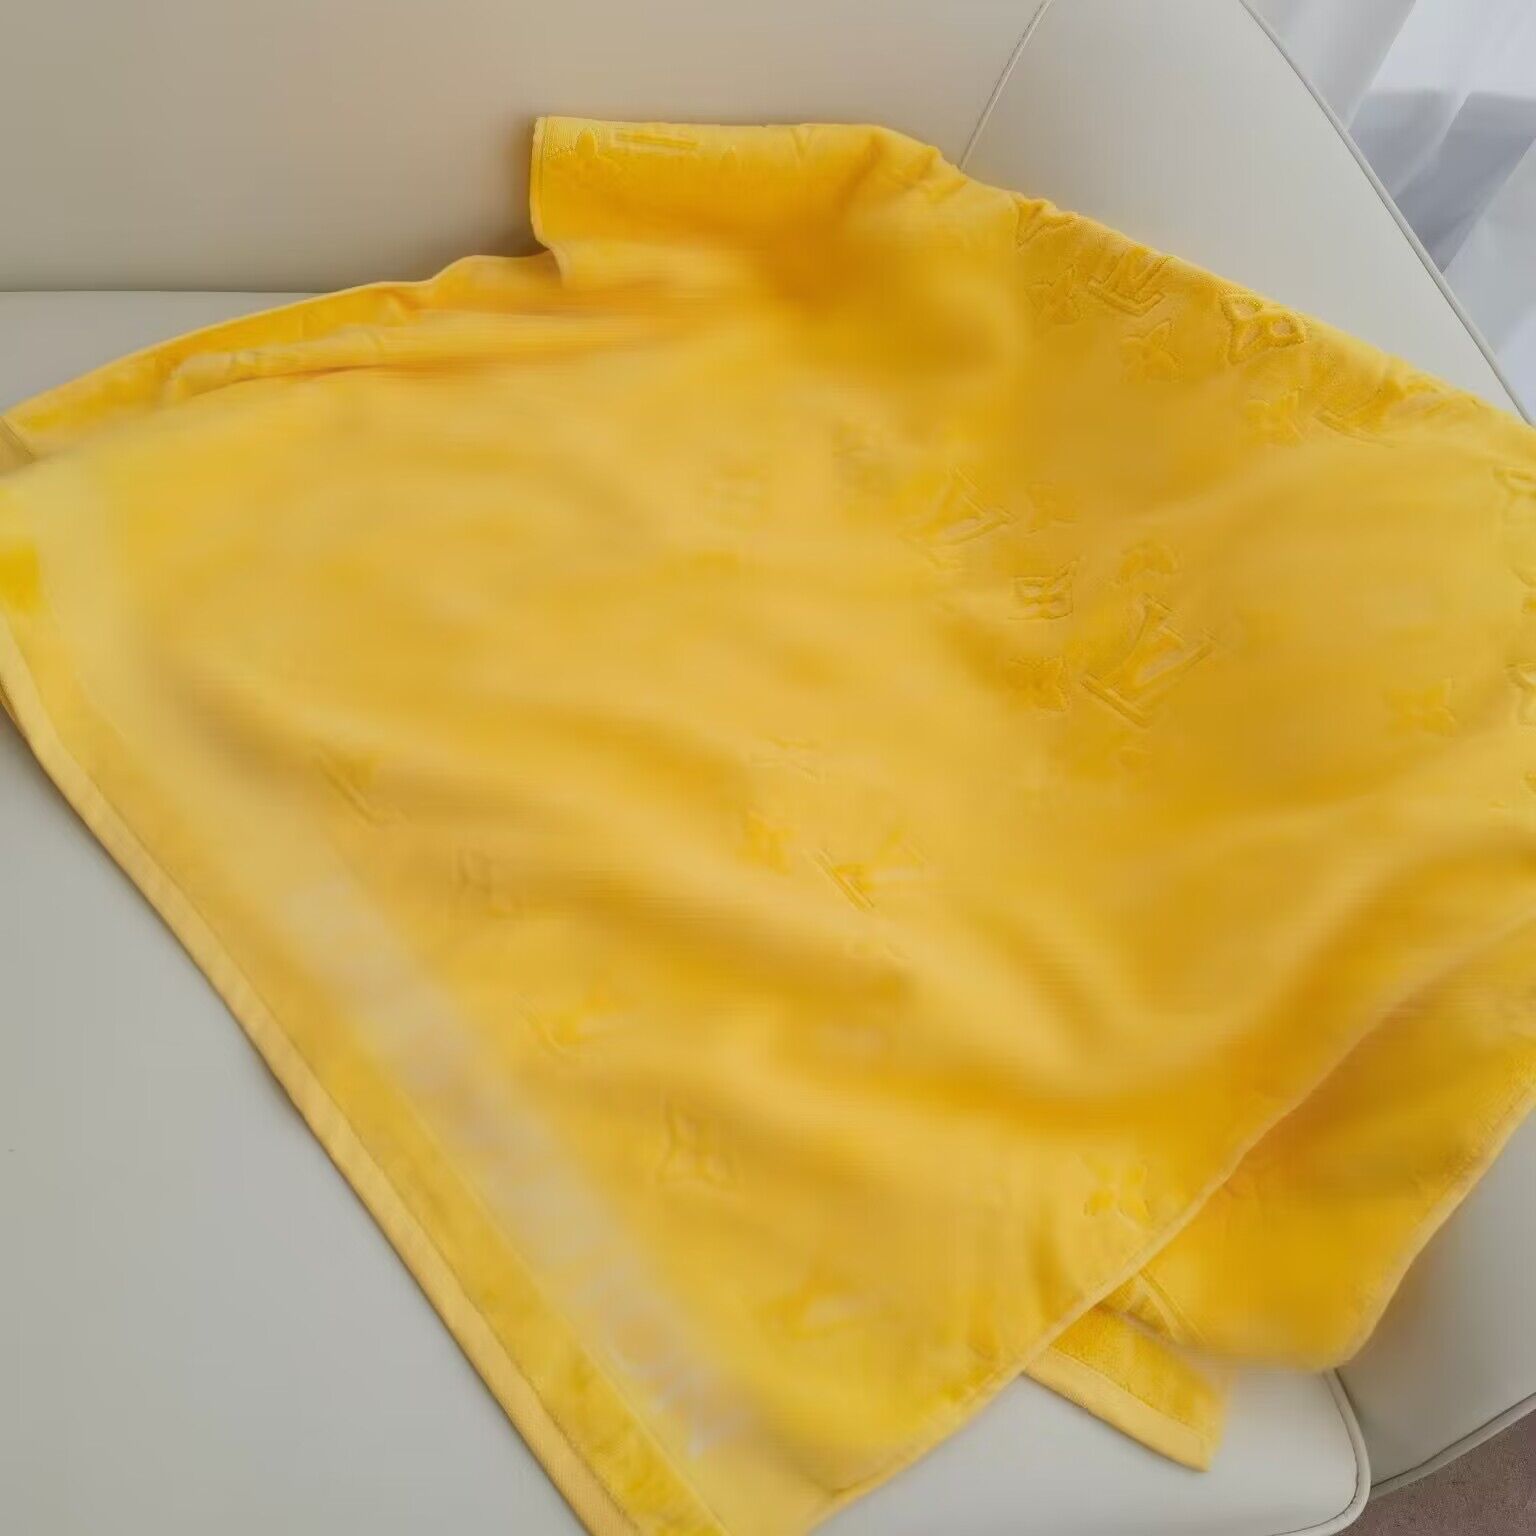 Luxe badhanddoeken mode driedimensionaal klassiek patroon katoenen stoffen van topkwaliteit groot formaat badhanddoek 150 * 90 cm voor binnen buiten auto strandvakanties